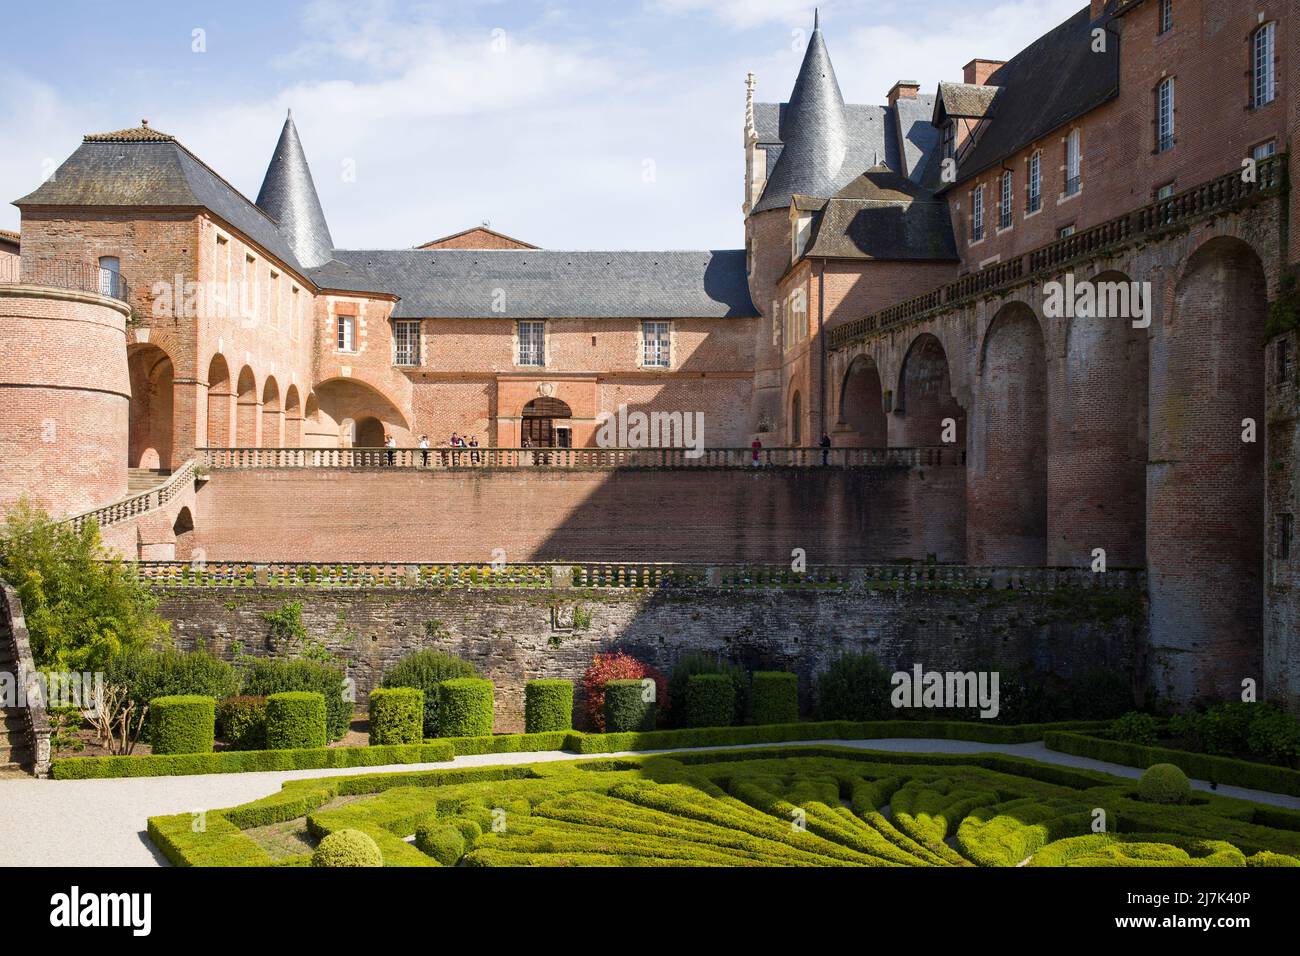 Le Palais de la Berbie en briques médiévales, ou le Château de l'évêque, à Albi, en France, fait partie du site classé au patrimoine mondial de l'UNESCO. Banque D'Images